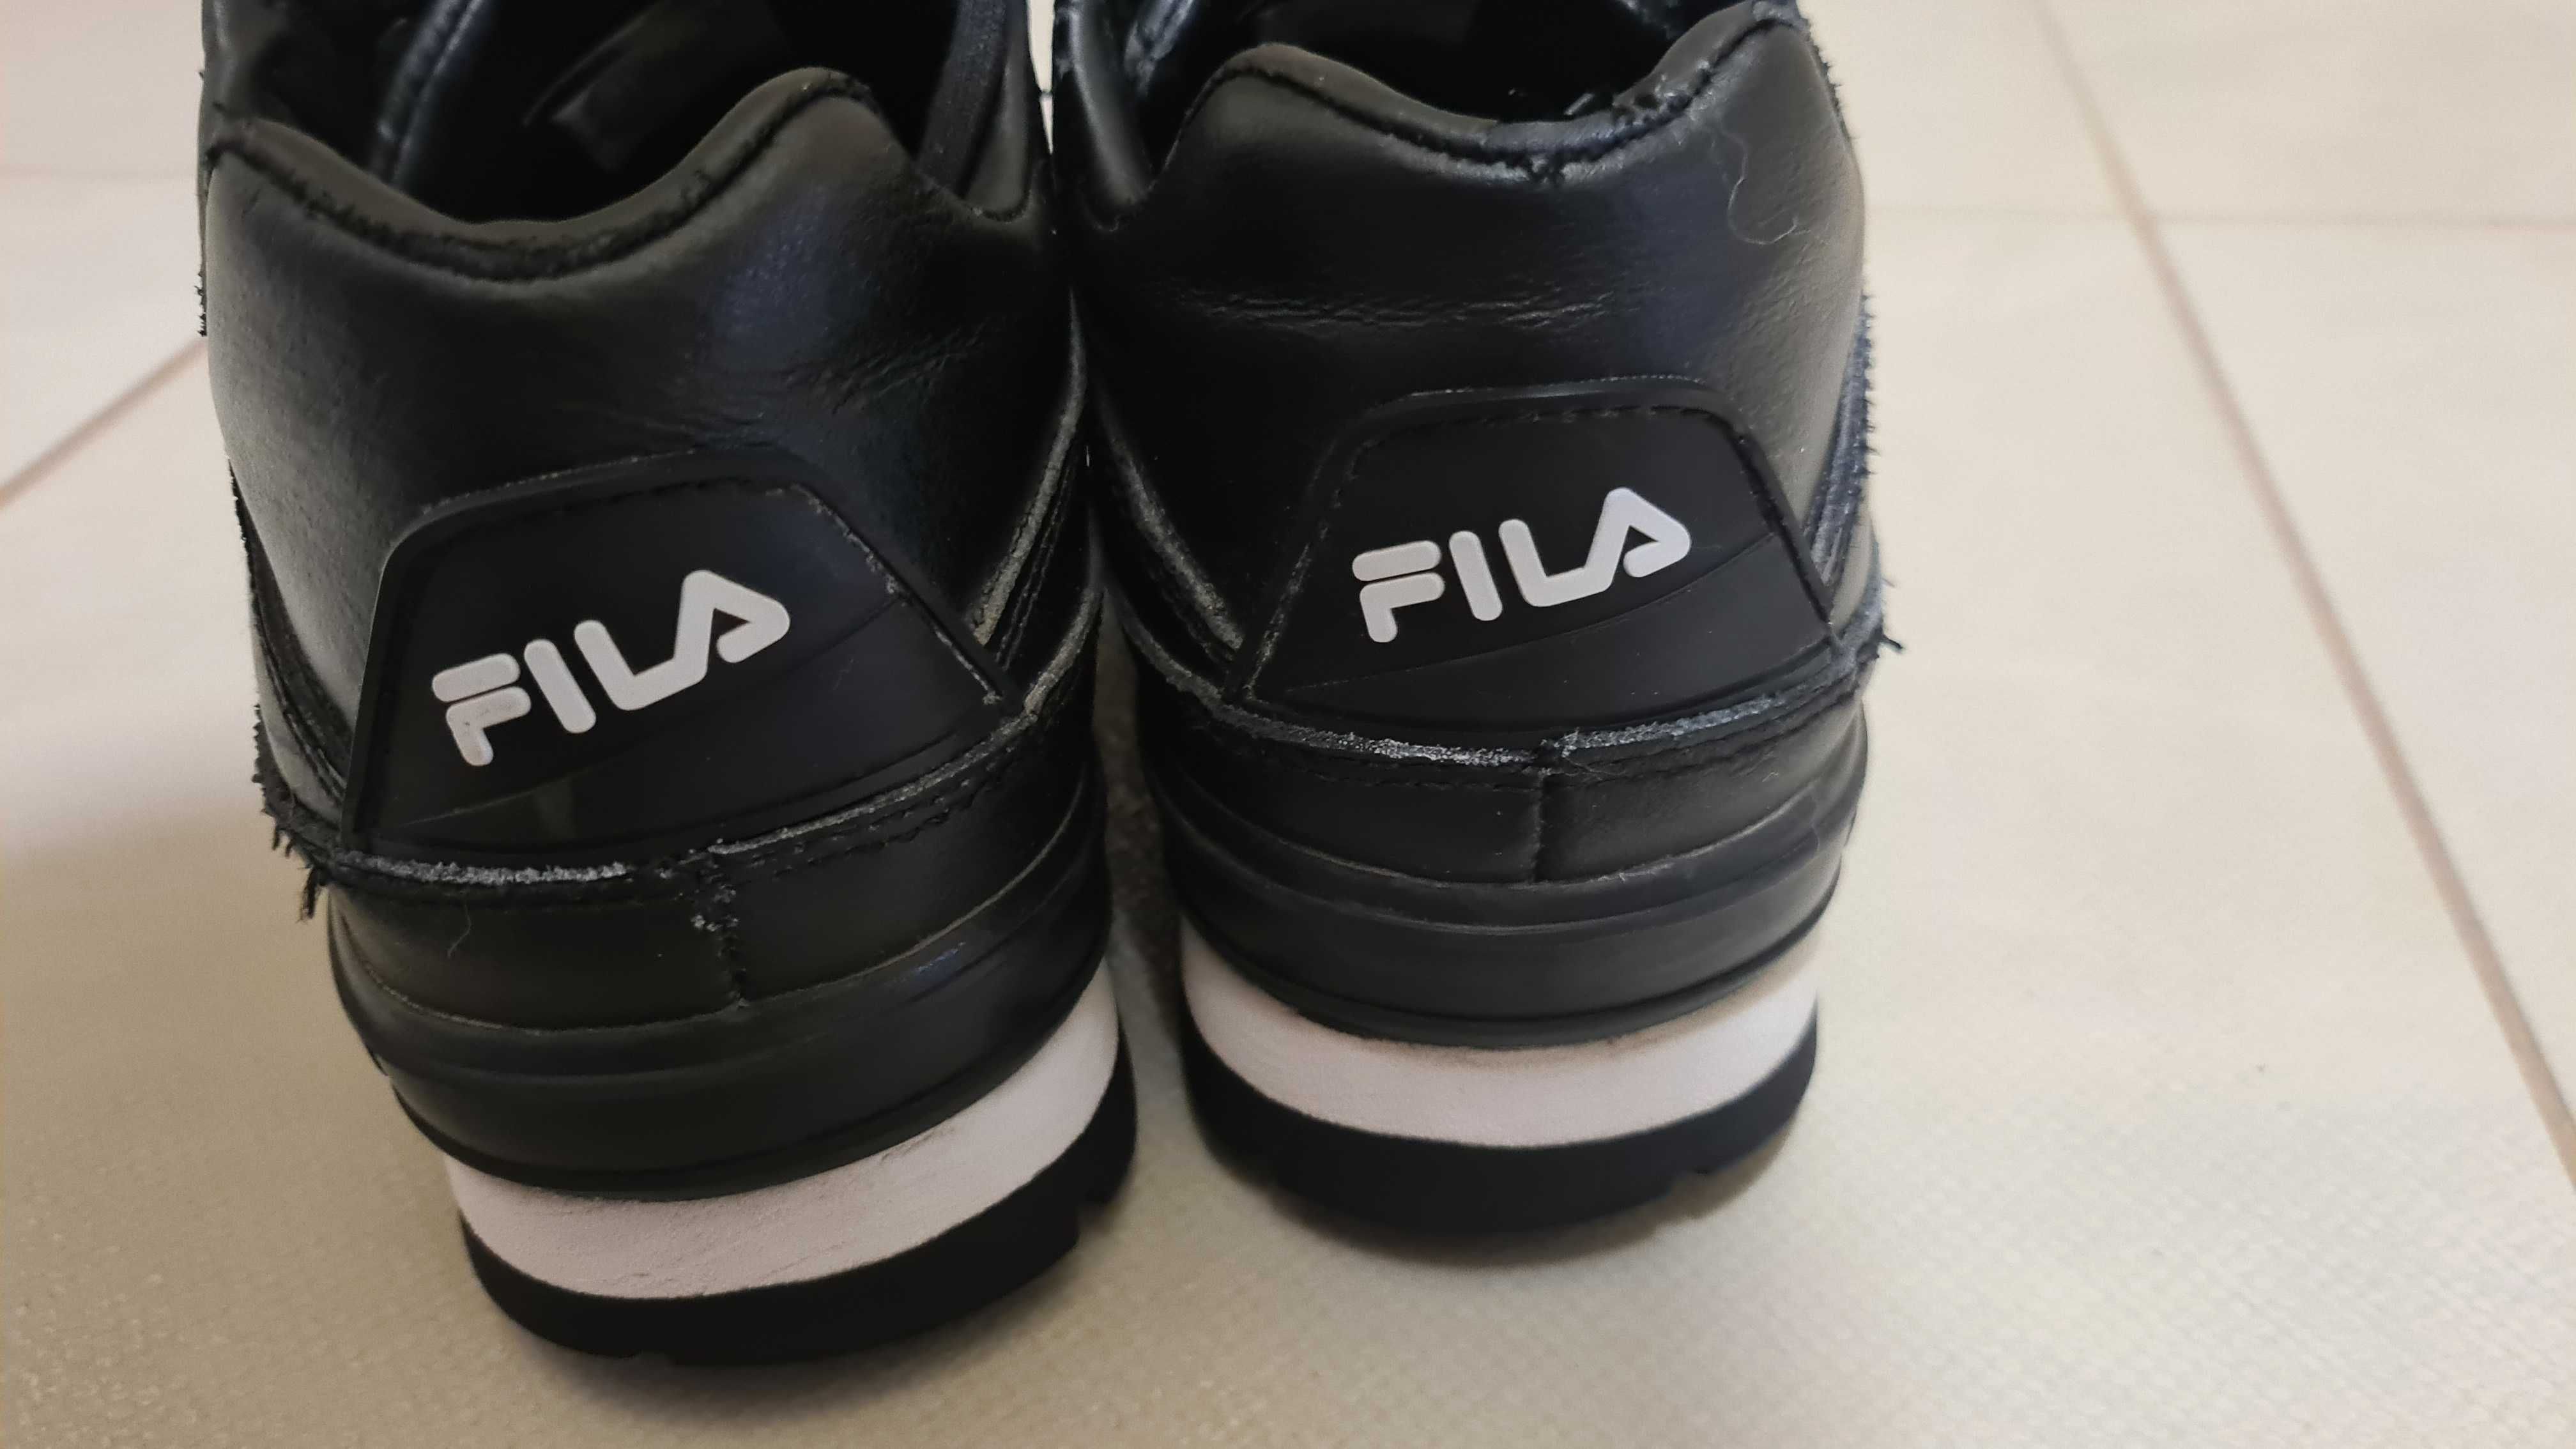 Buty skórzane FILA Trailblazer Leather. Proszę czytać opis.